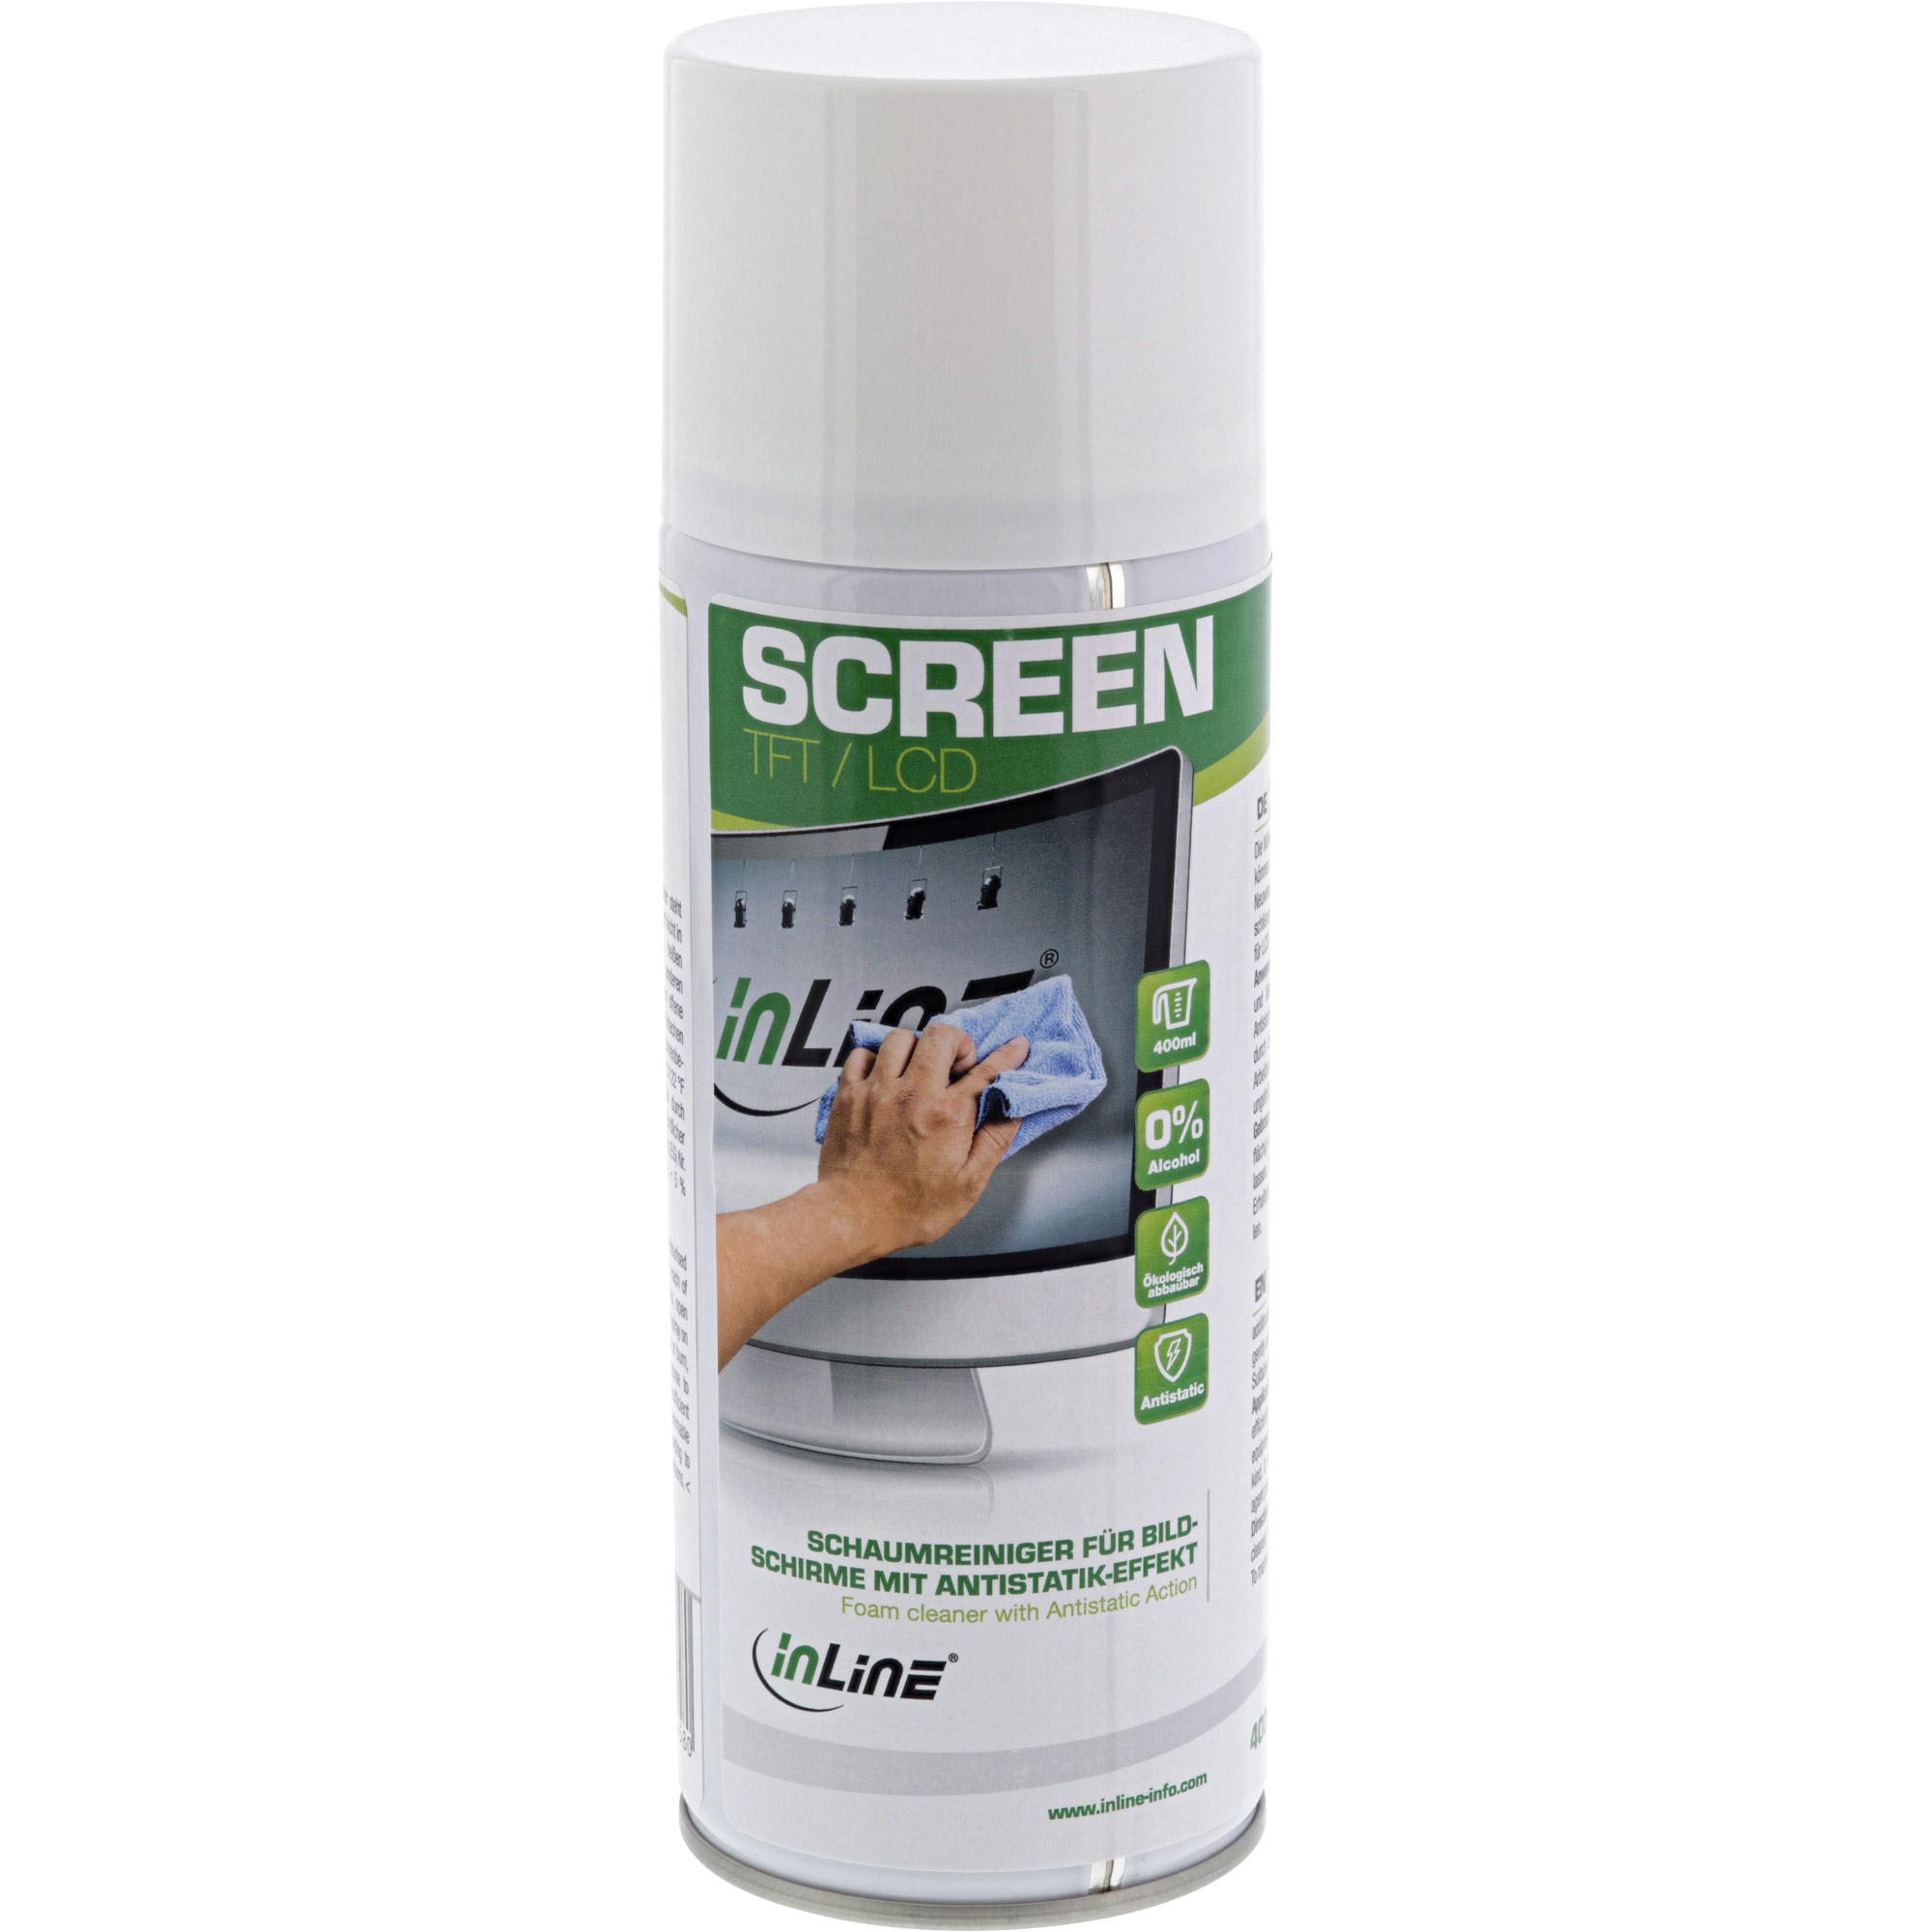 InLine® Schaumreiniger für Bildschirme mit Antistatik-Effekt, 400ml